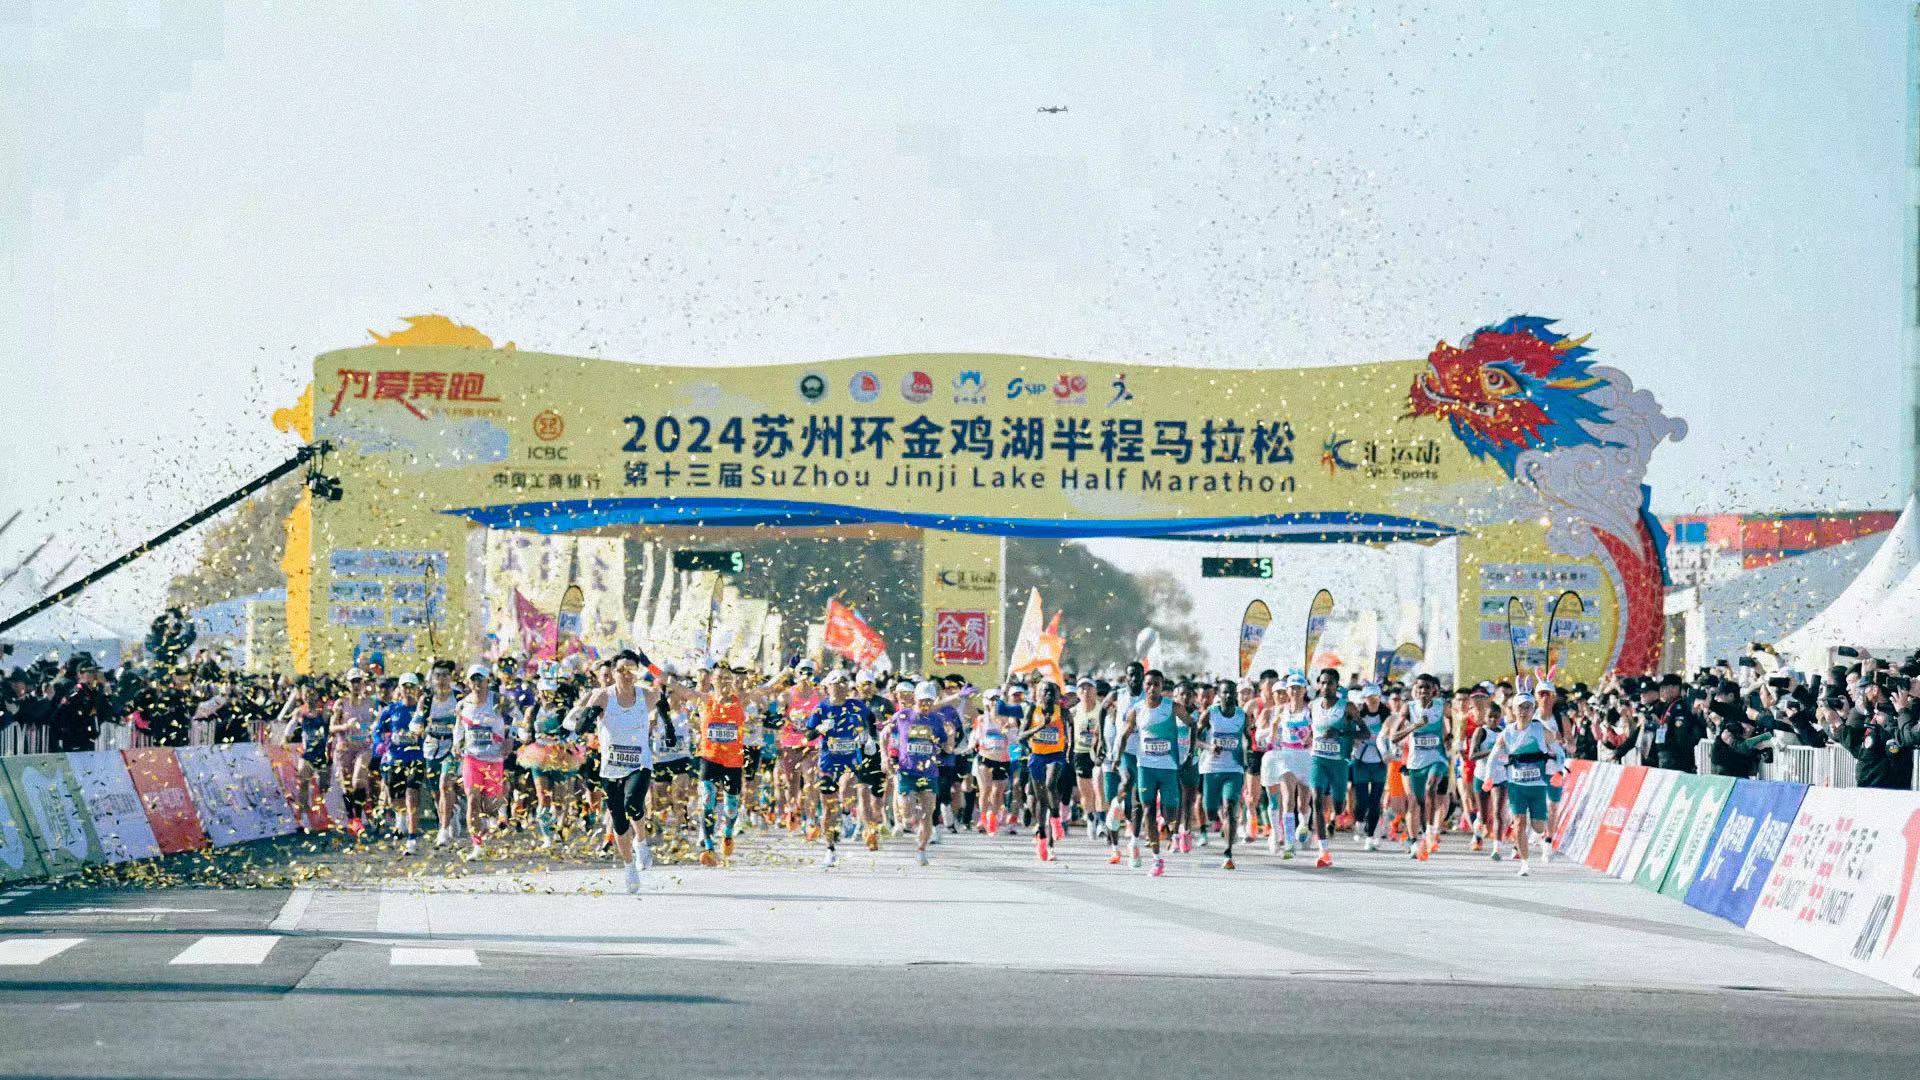 三萬名國內外跑者雲聚蘇州金雞湖畔